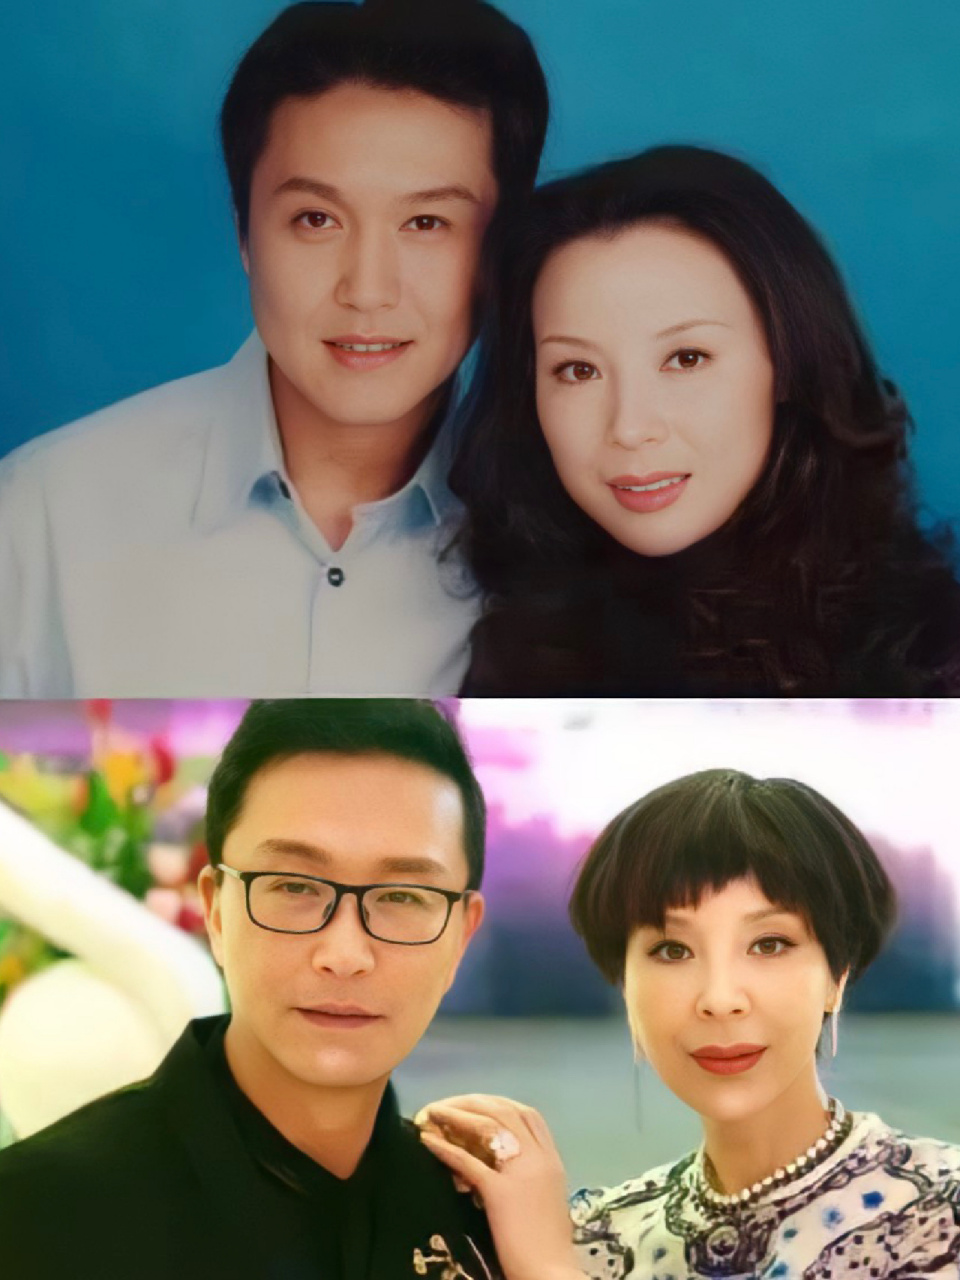 老戏骨吴刚娶初恋岳秀清,恩爱31年模范夫妻   出道几十年的吴刚,终于